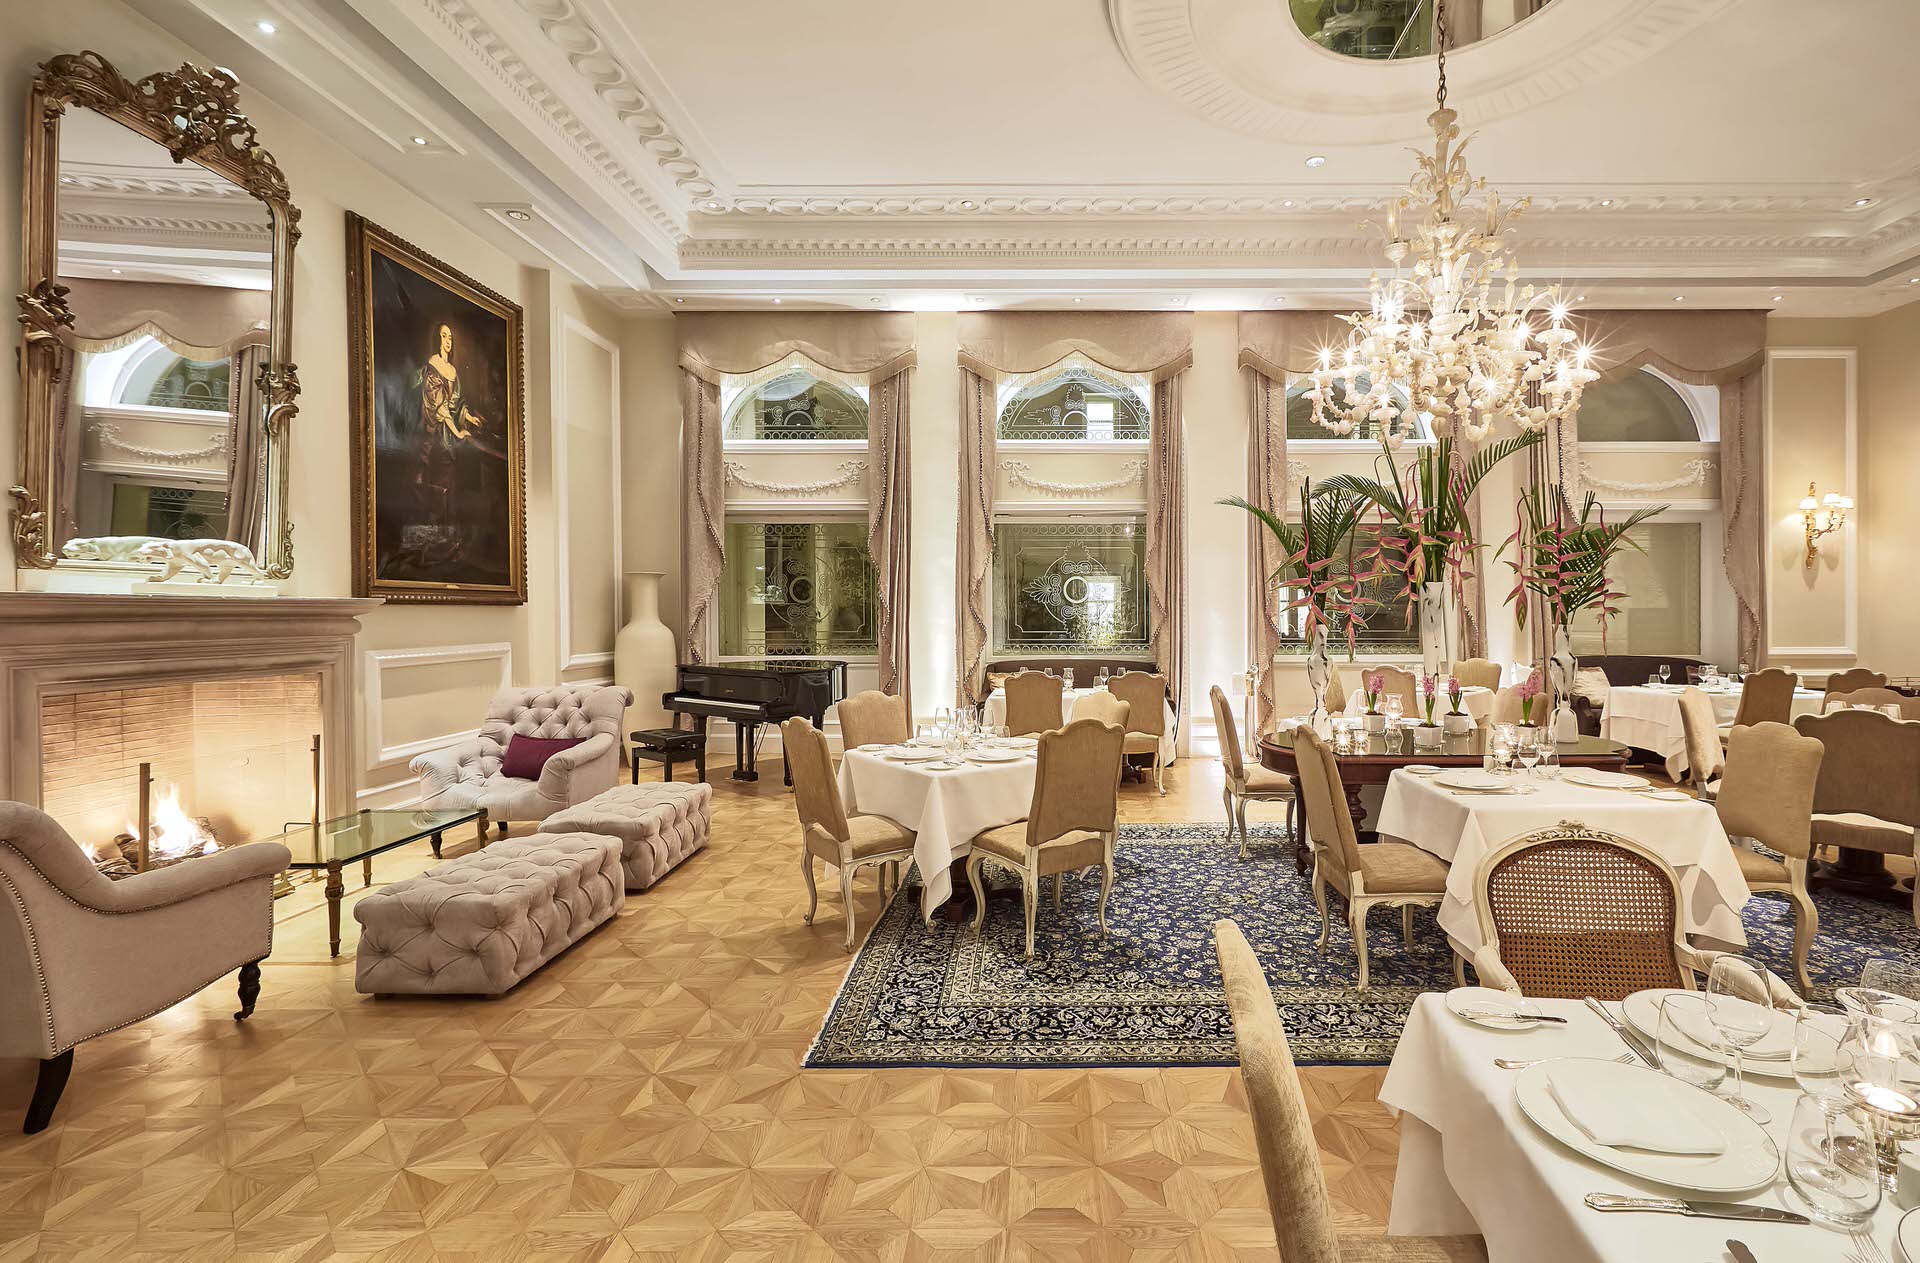 Το Tudor Hall Restaurant στο ξενοδοχείο King George απέκτησε το πρώτο αστέρι Michelin